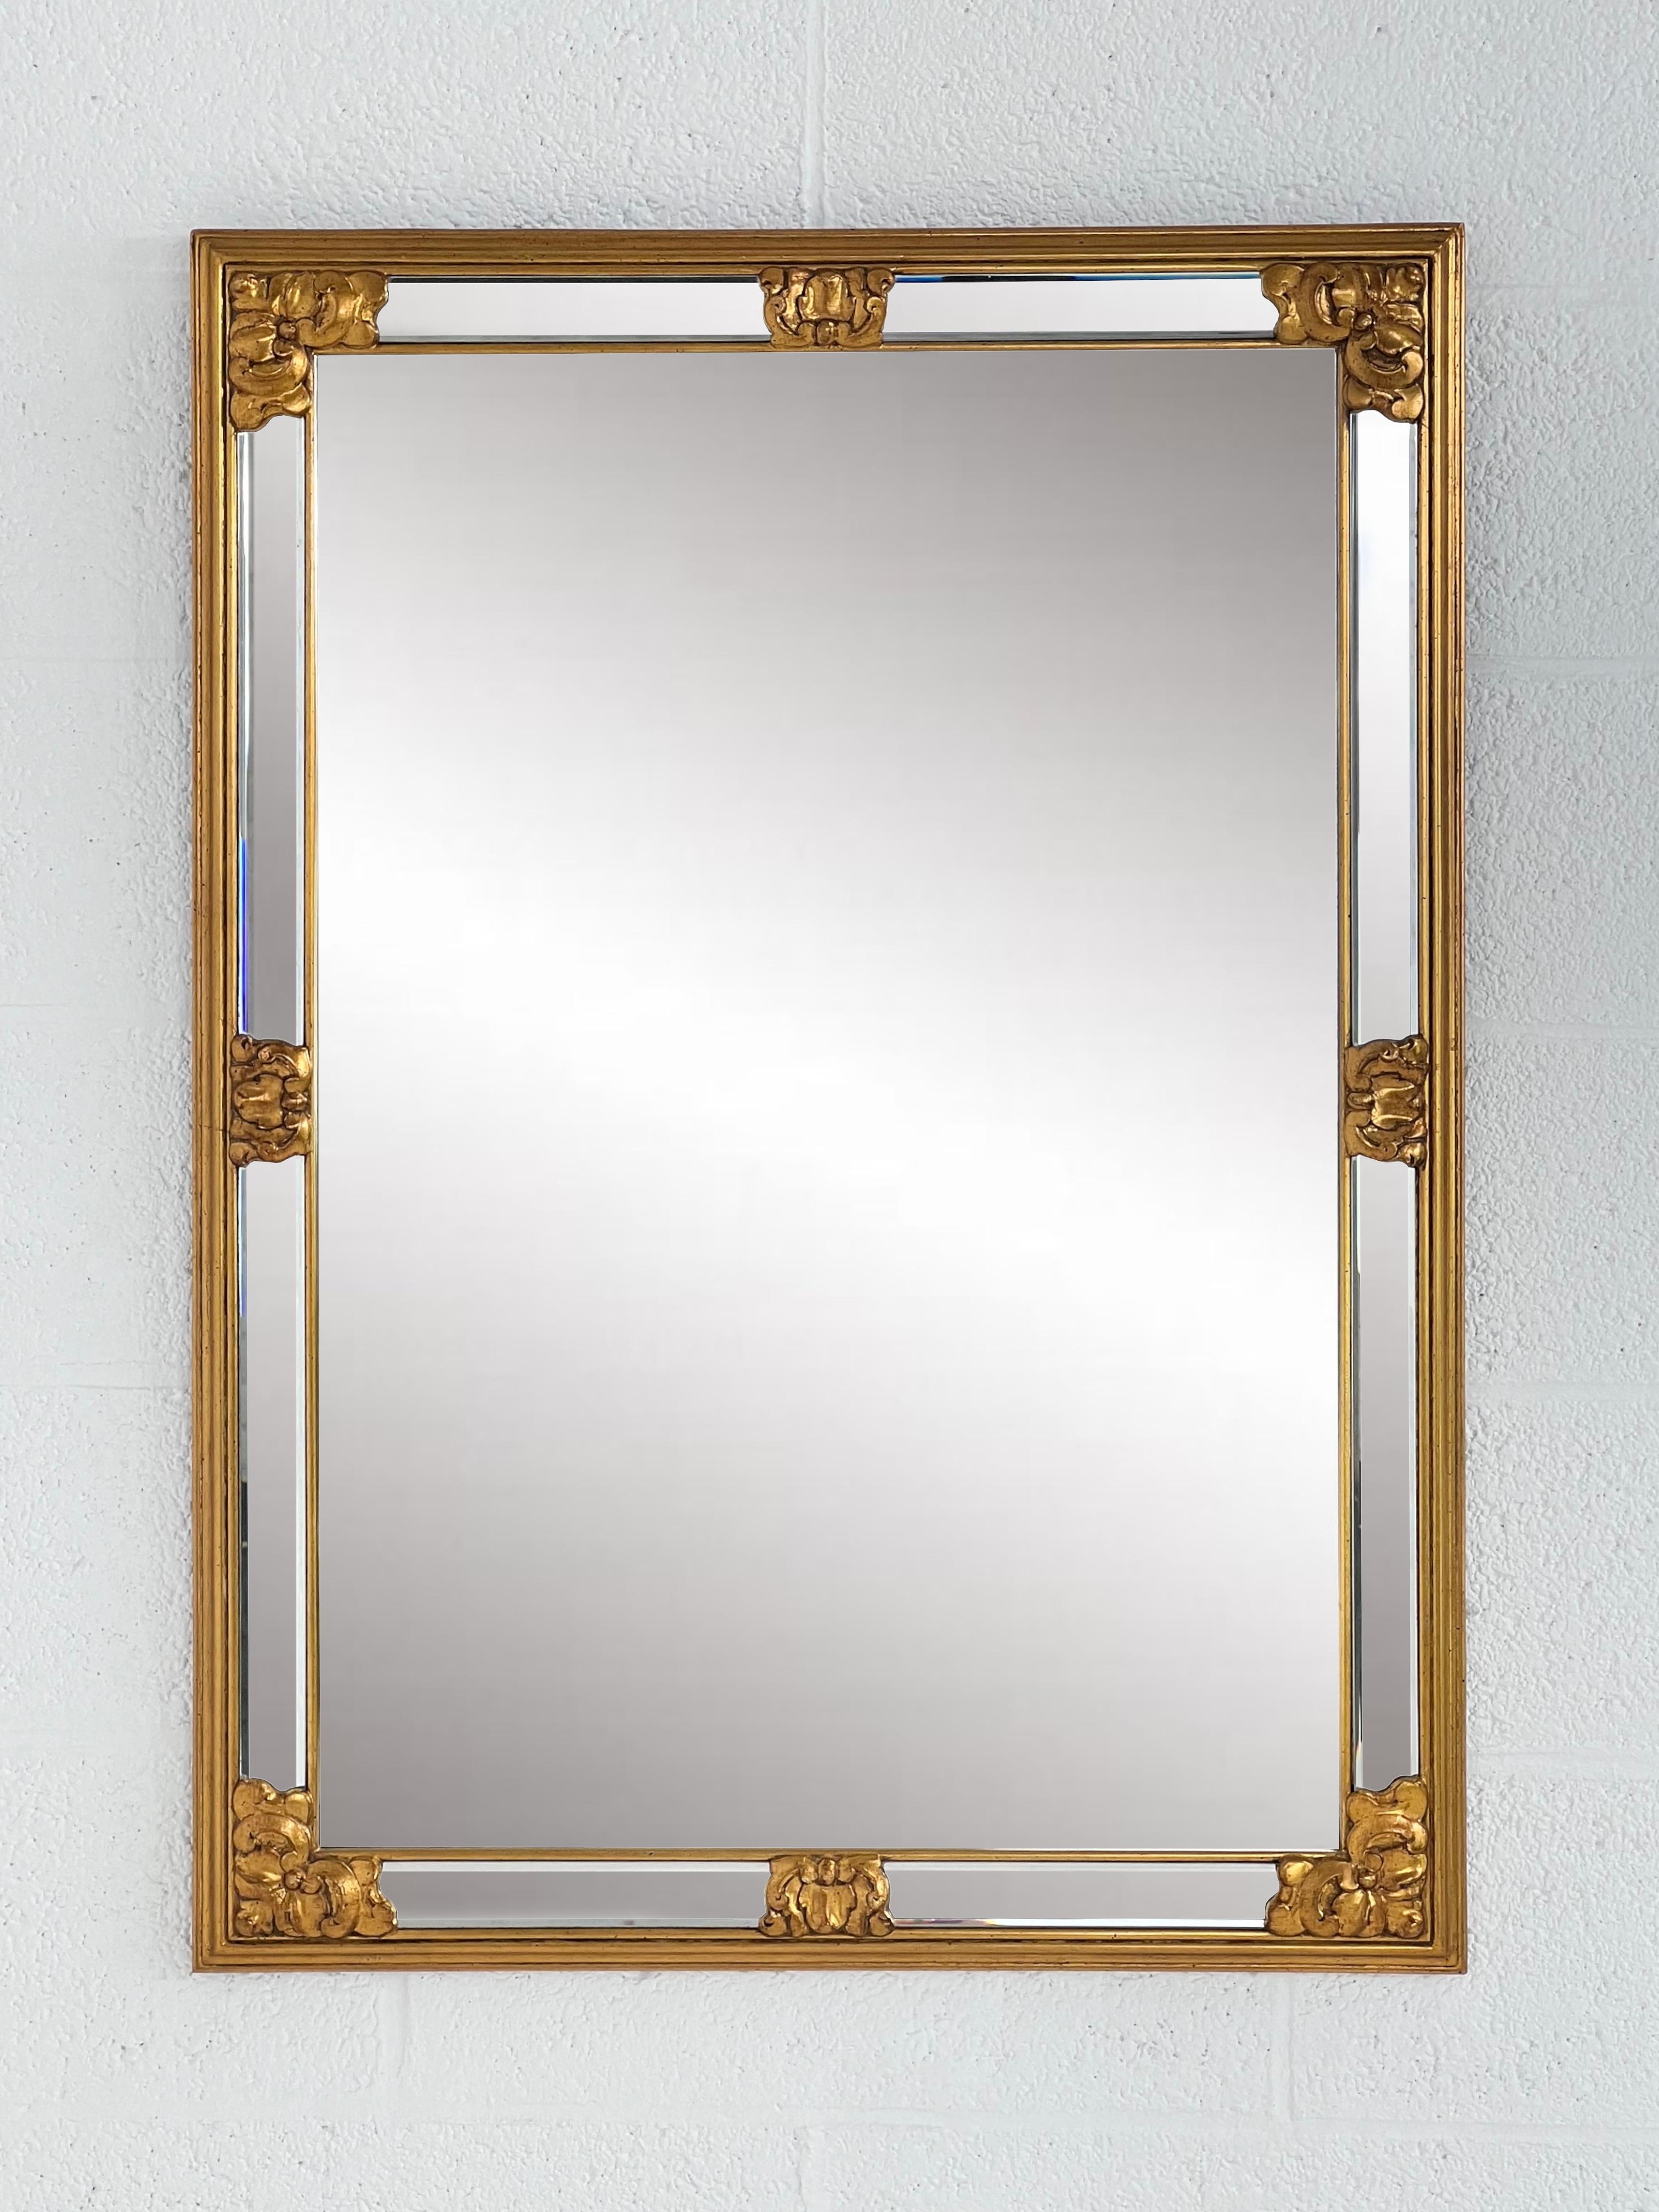 Grand miroir avec des barrières de haute qualité. Il en impose par sa taille mais aussi par la qualité de sa fabrication. Les fixations intégrées sont conçues pour que vous puissiez l'accrocher en mode portrait ou paysage. En parfait état, sans